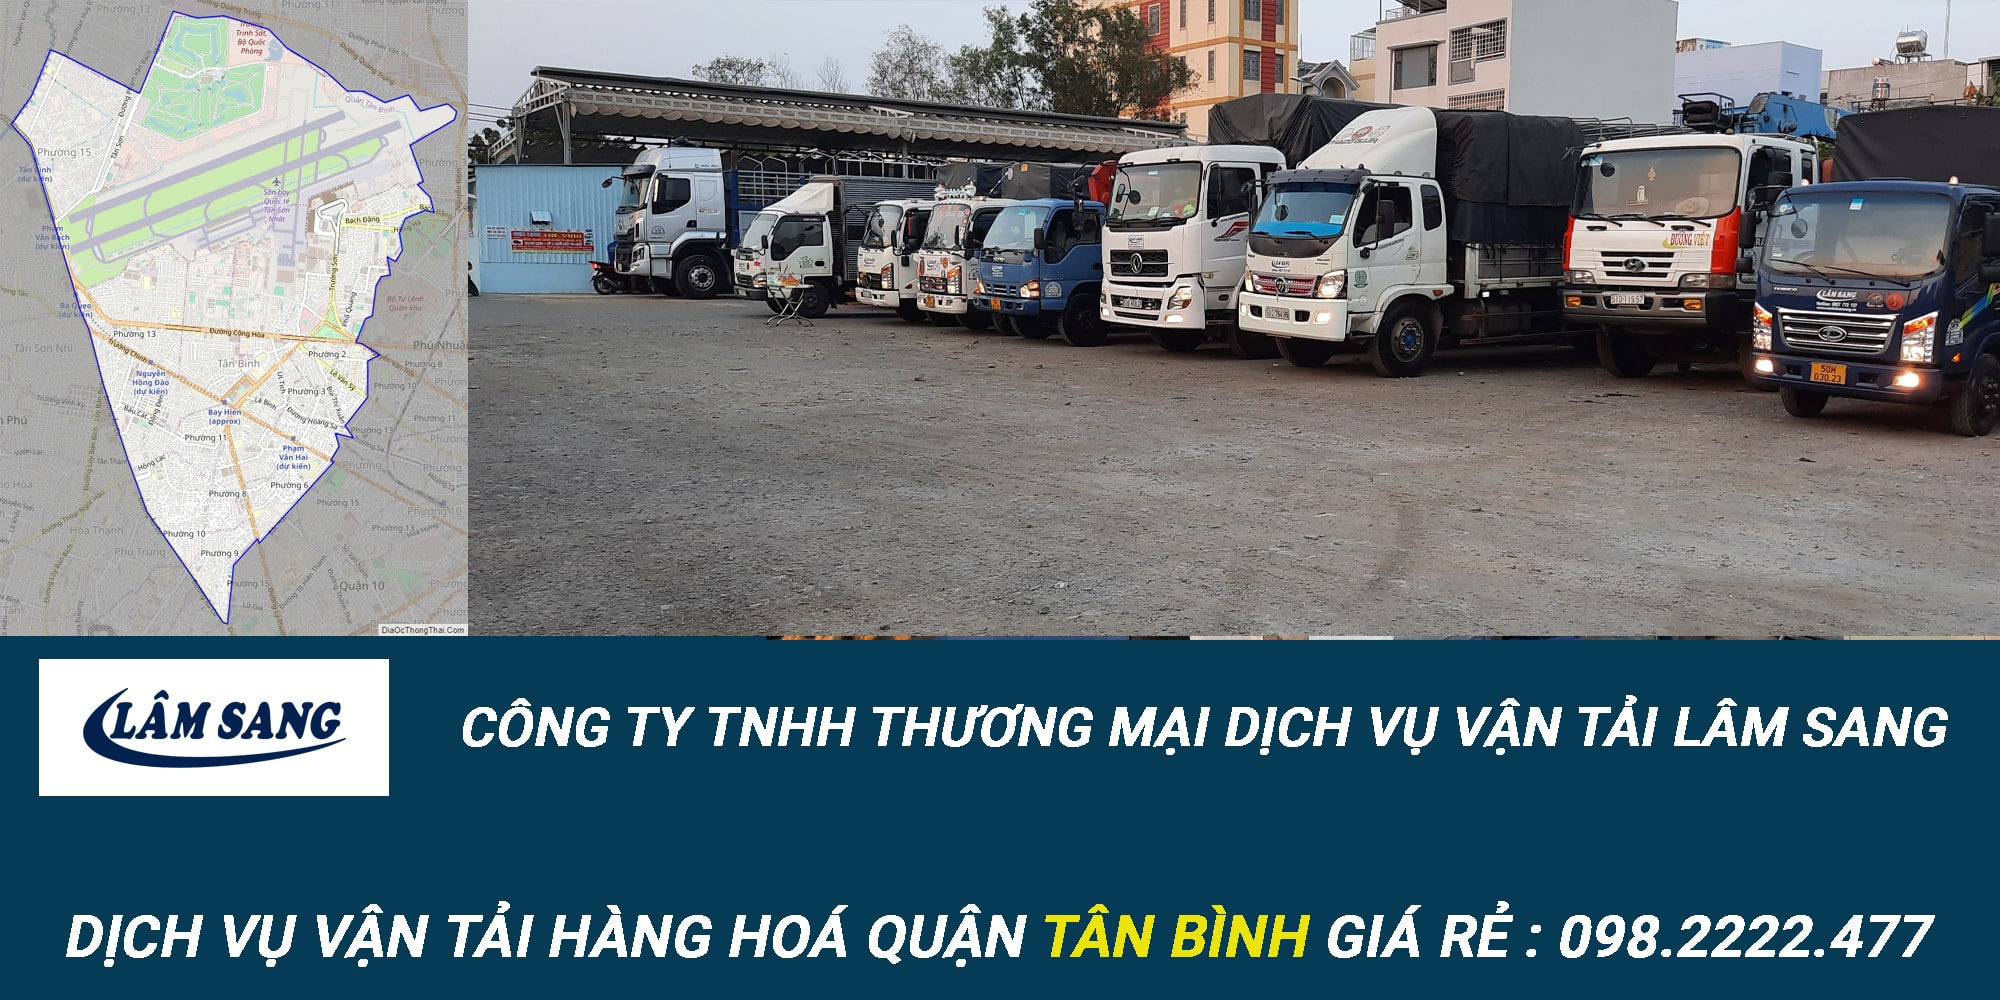 Dịch vụ vận tải hàng hóa Quận Tân Bình giá rẻ và chuyên nghiệp